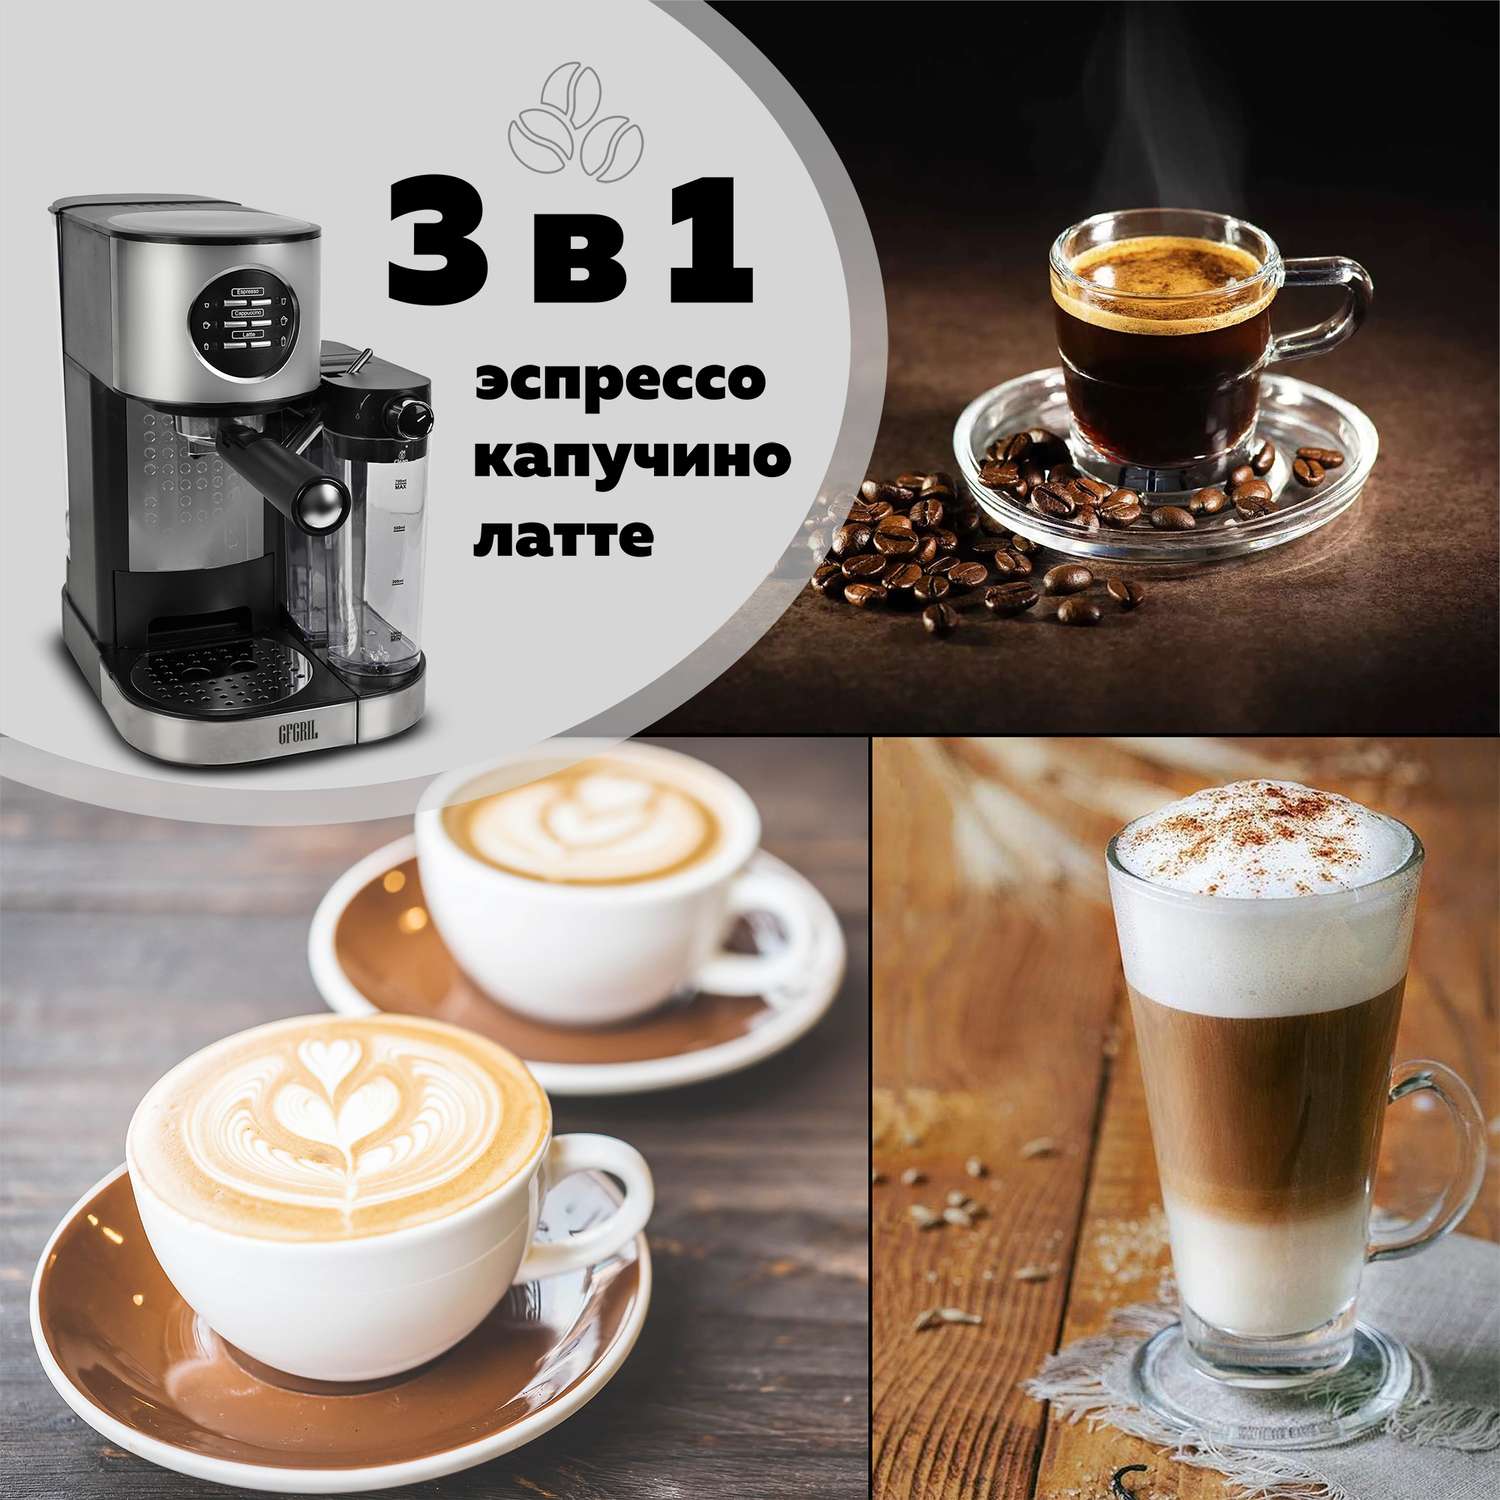 Кофеварка GFGRIL С автоматическим капучинатором 3 в 1 GFC-A300 Эспрессо-Капучино-Латте - фото 2